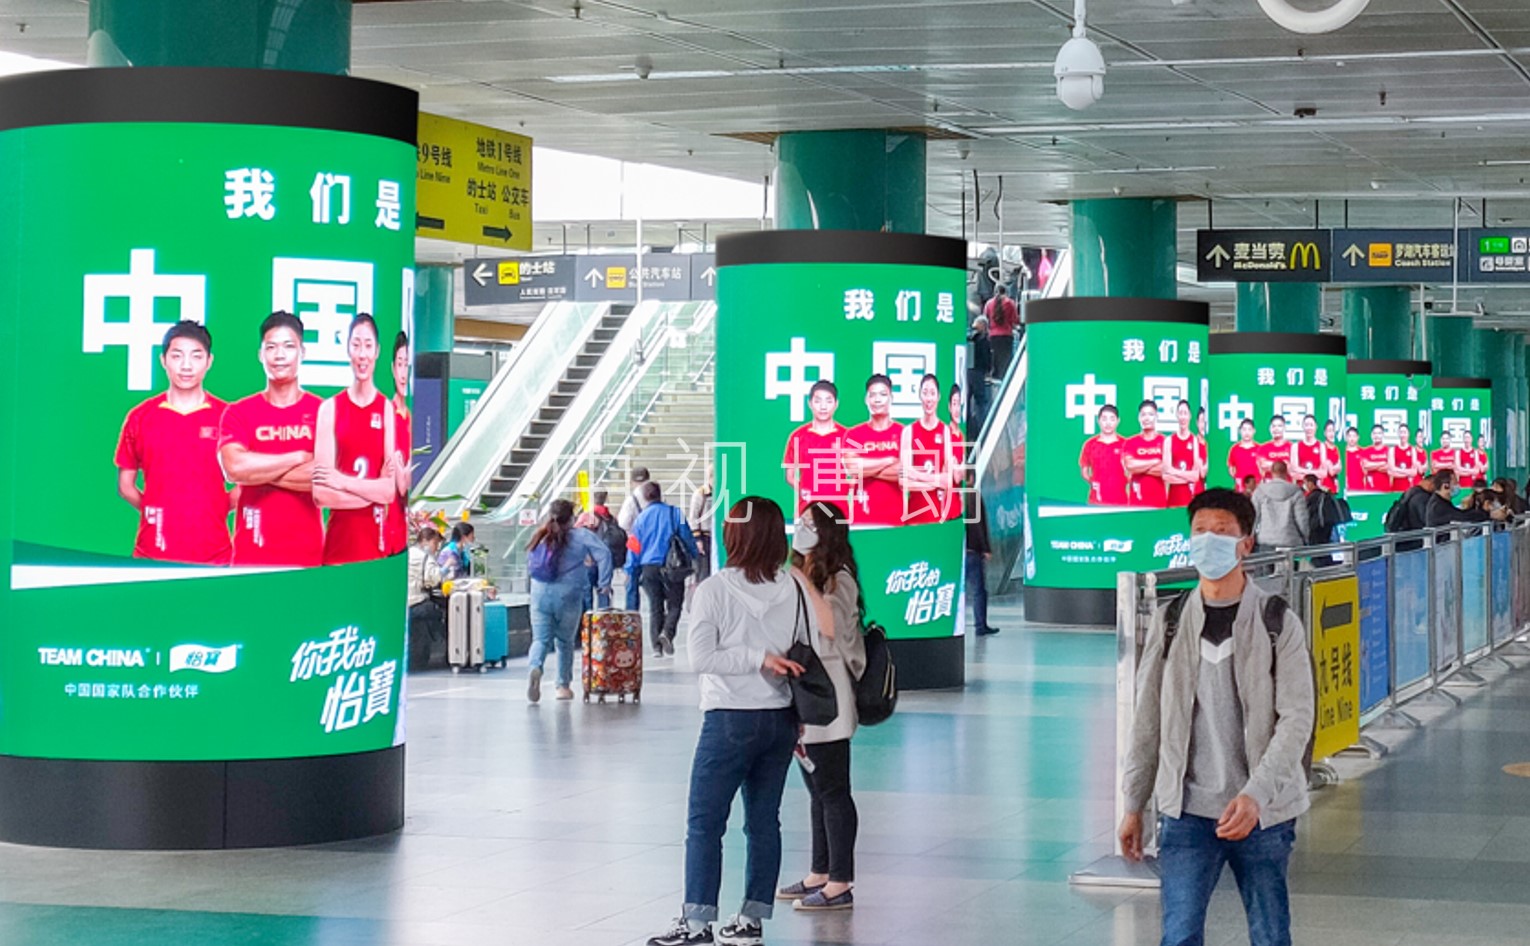 深圳站广告-出站及换乘区立柱LED屏套装